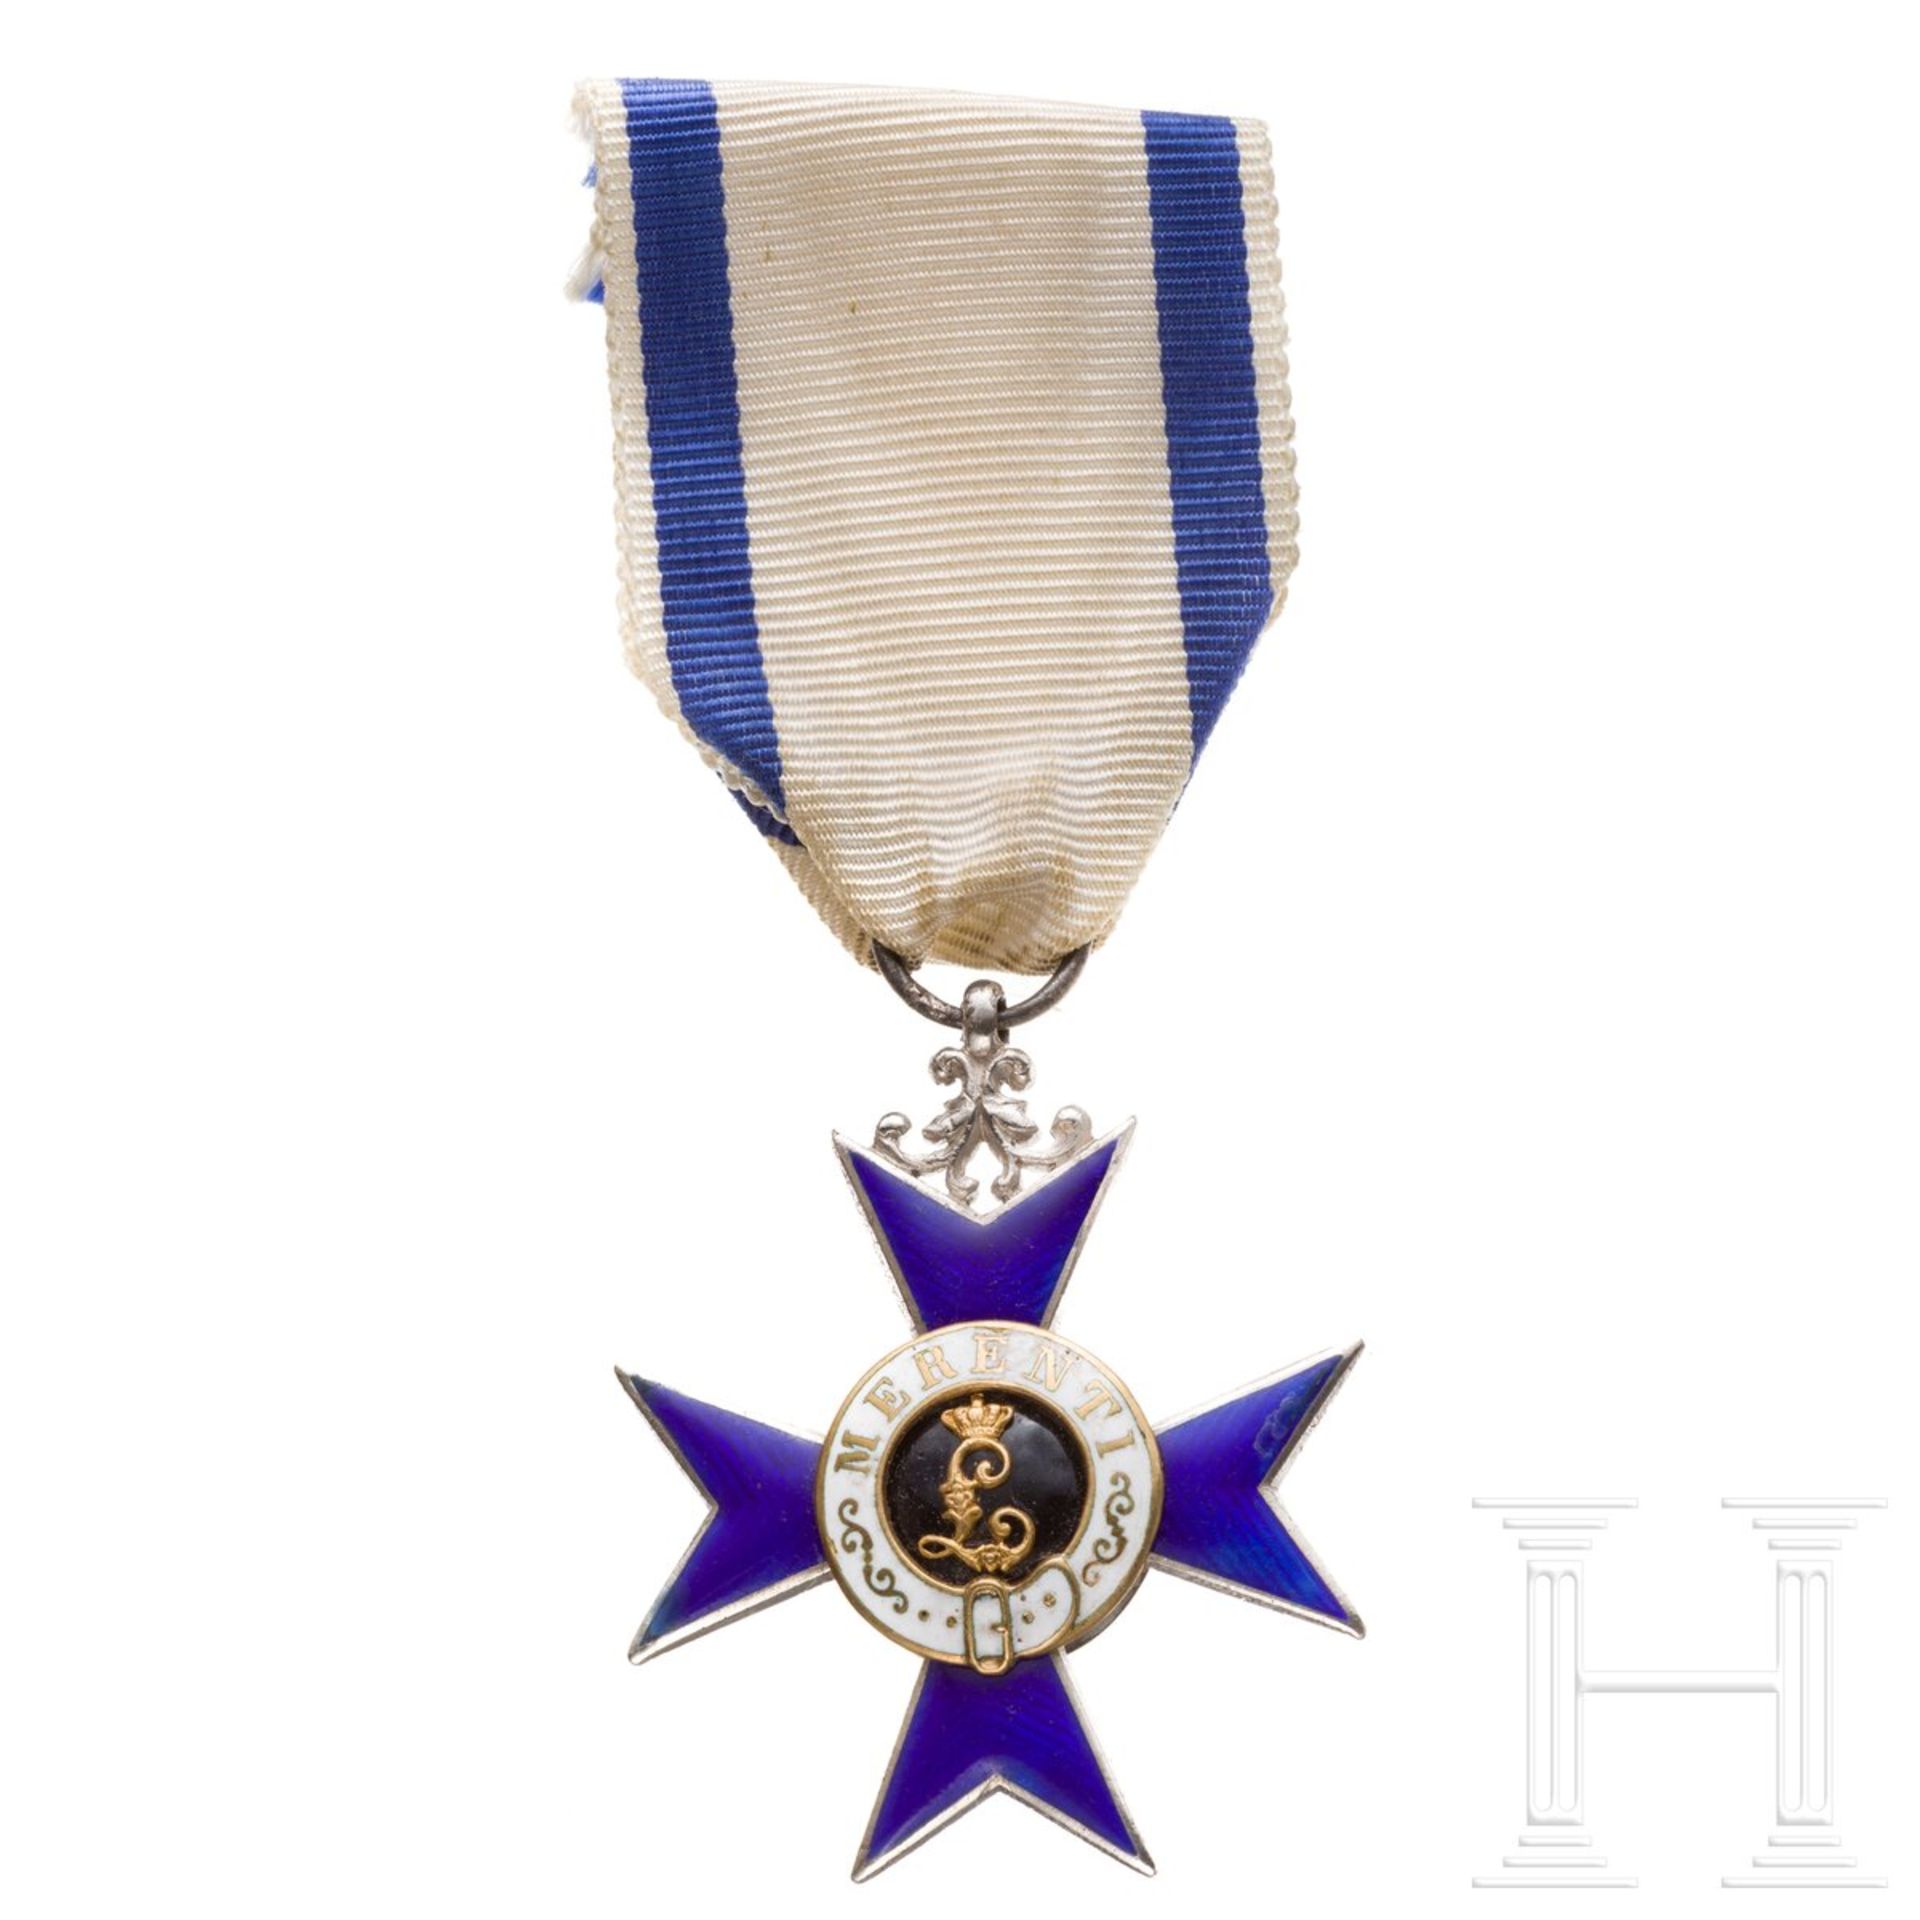 Militärverdienstkreuz, 1. Form (1866 - 1905)
